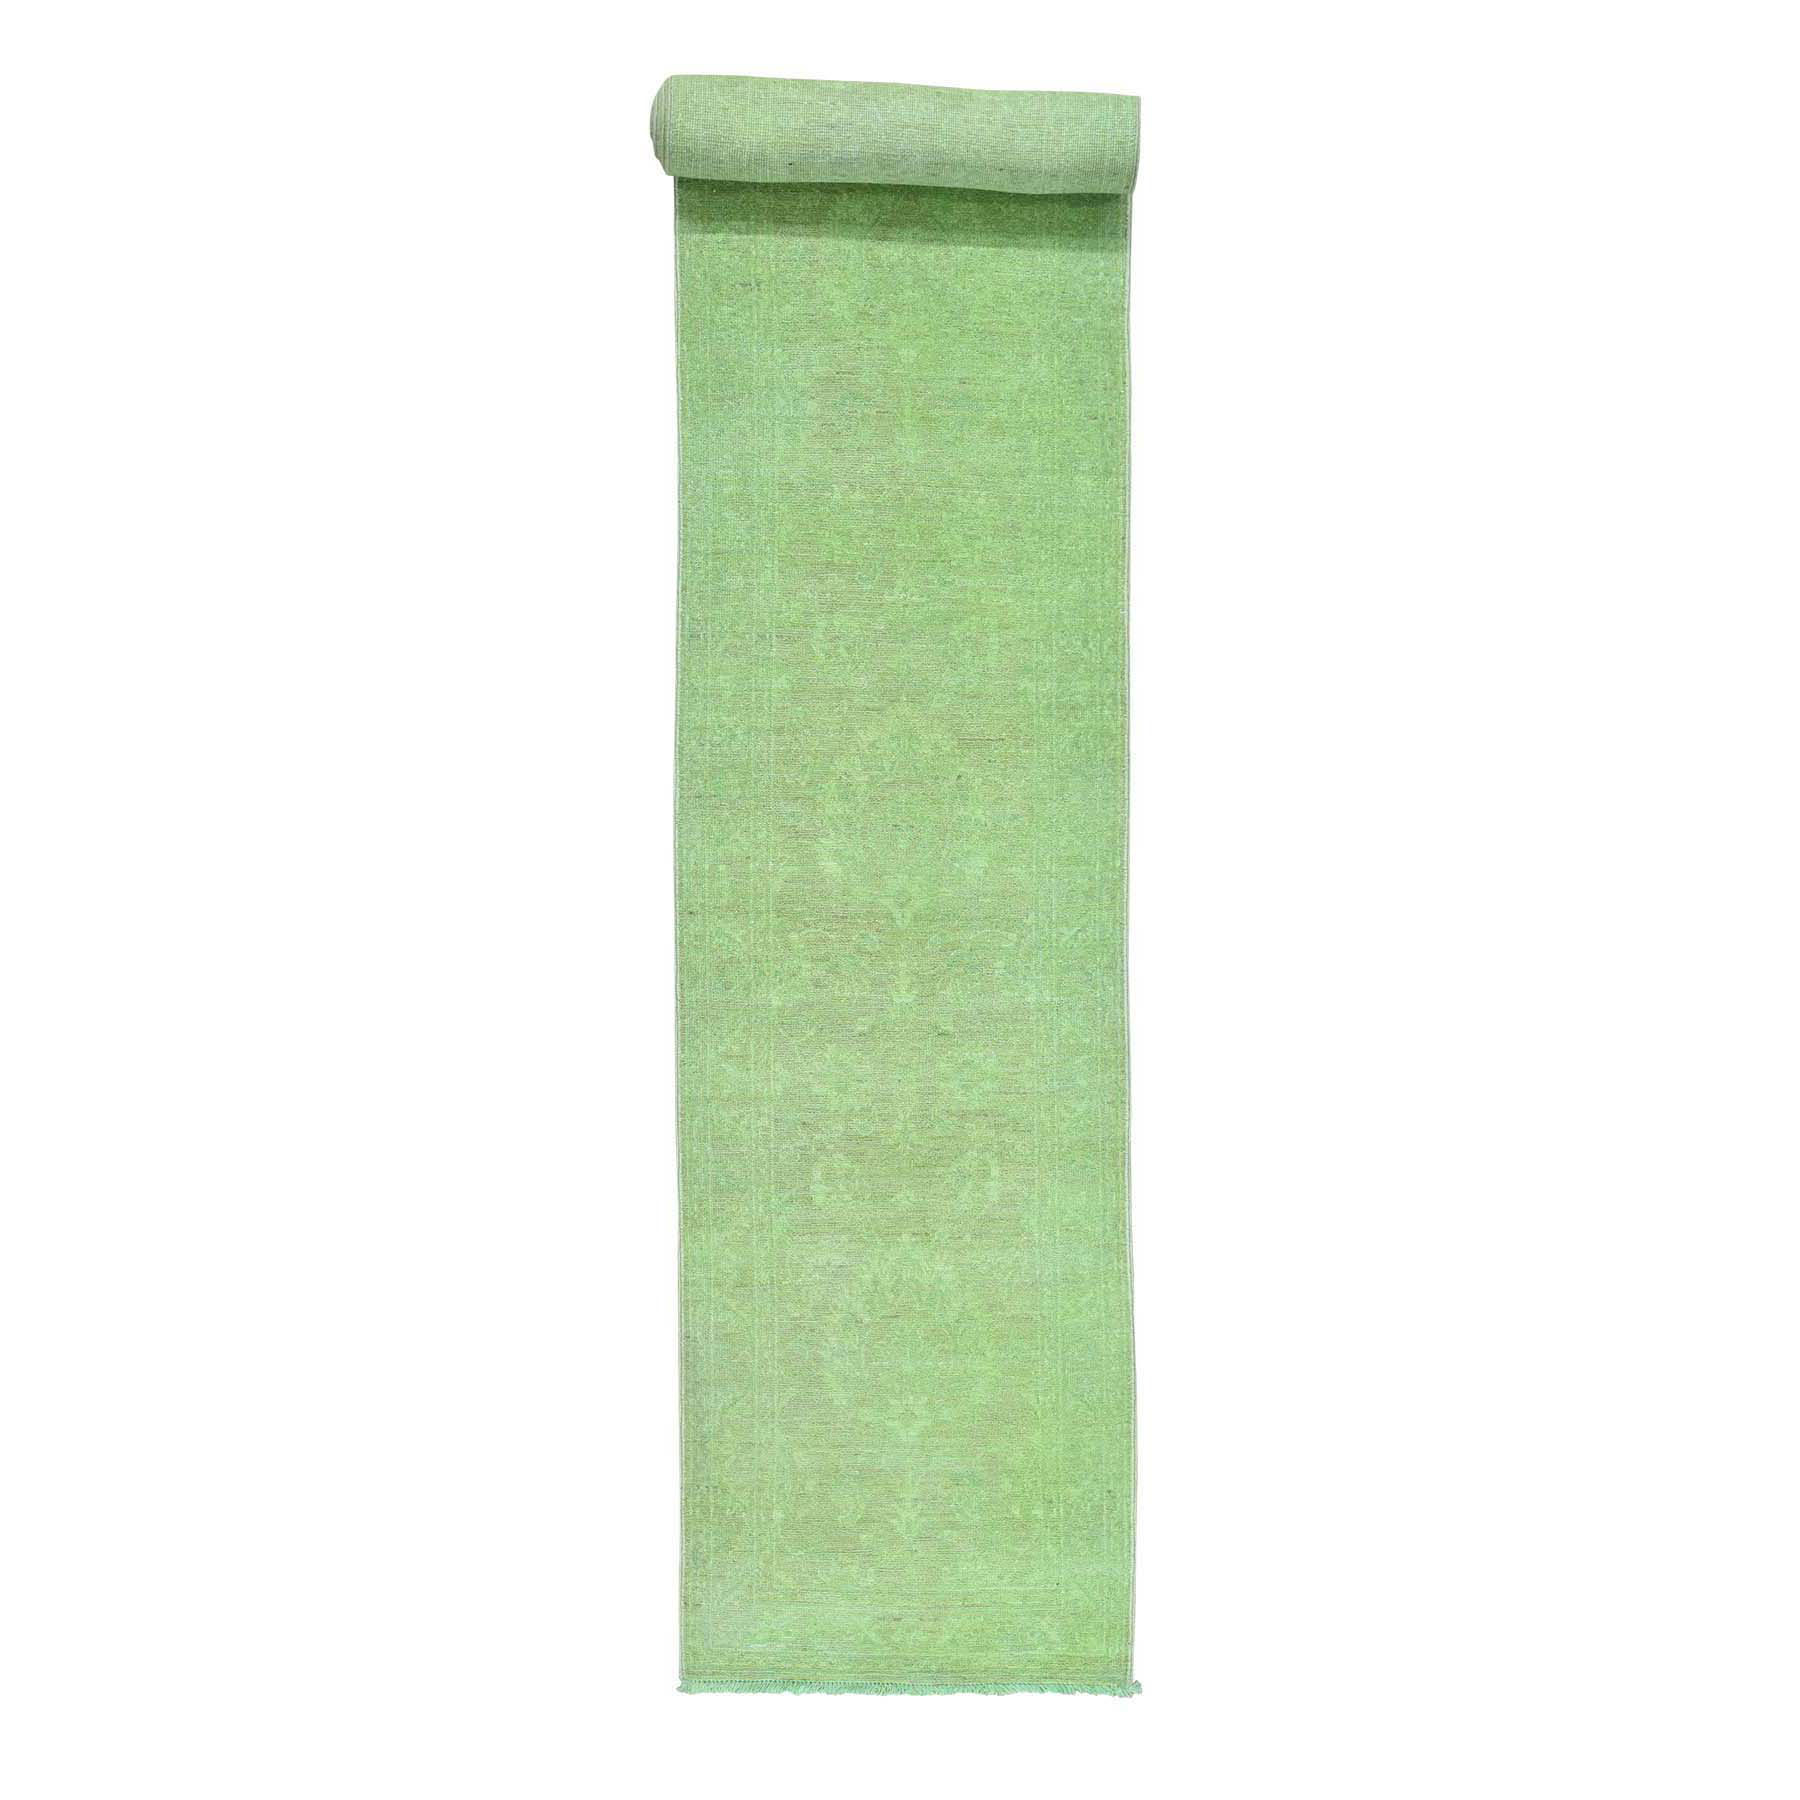 2'7"x16'1" Hand Woven Green Peshawar Overdyed Pure Wool XL Runner Rug 